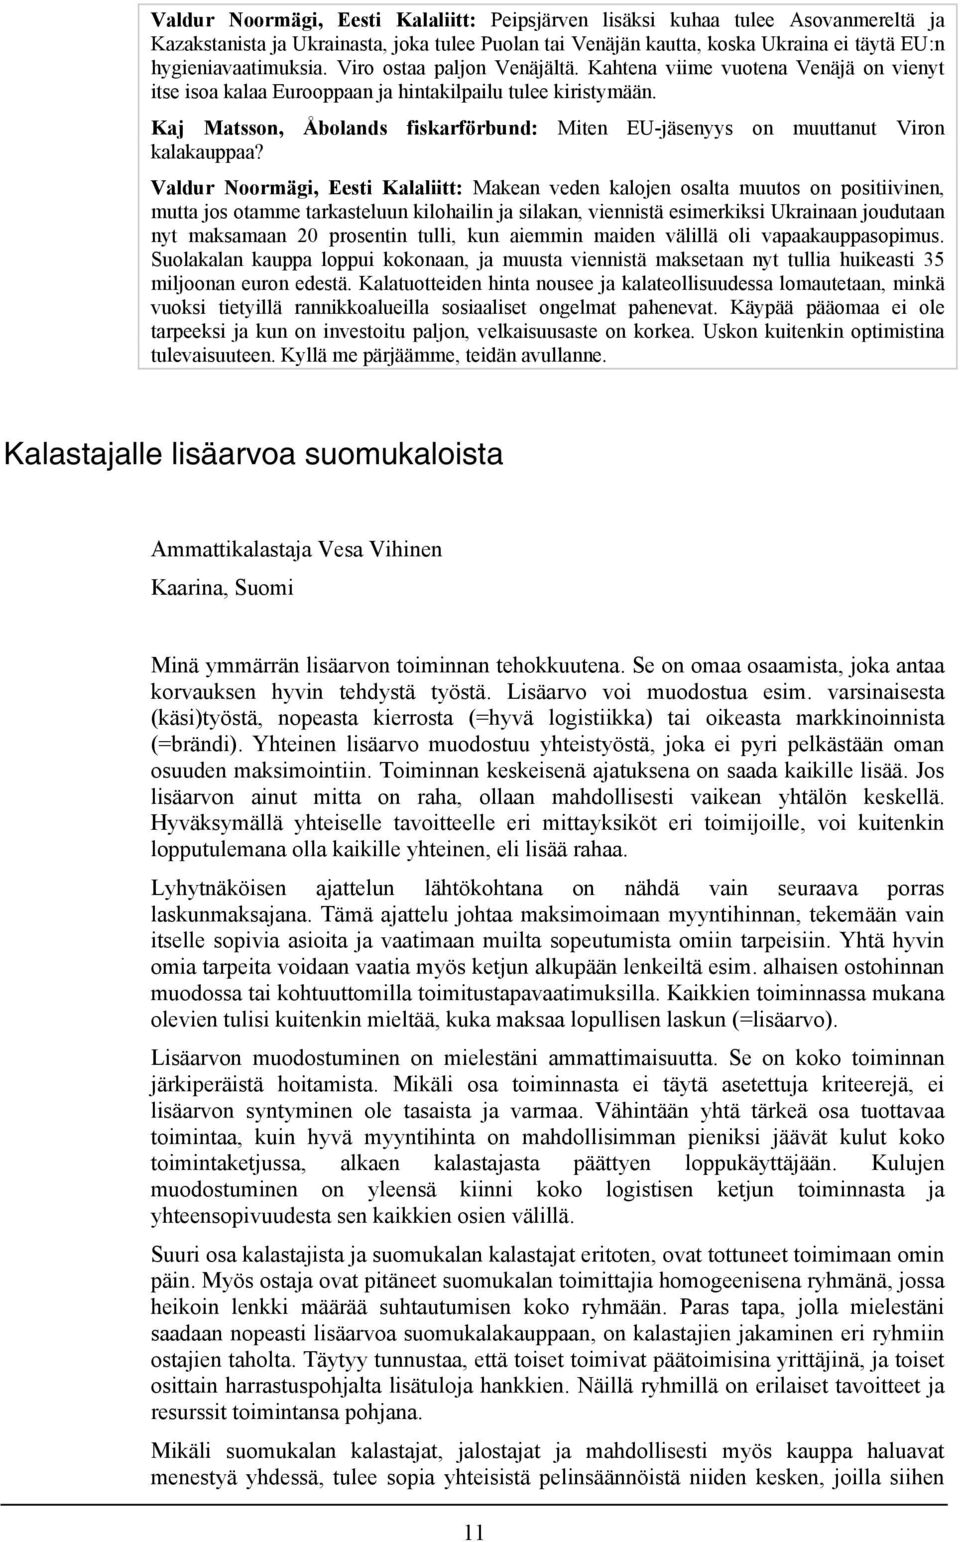 Kaj Matsson, Åbolands fiskarförbund: Miten EU-jäsenyys on muuttanut Viron kalakauppaa?